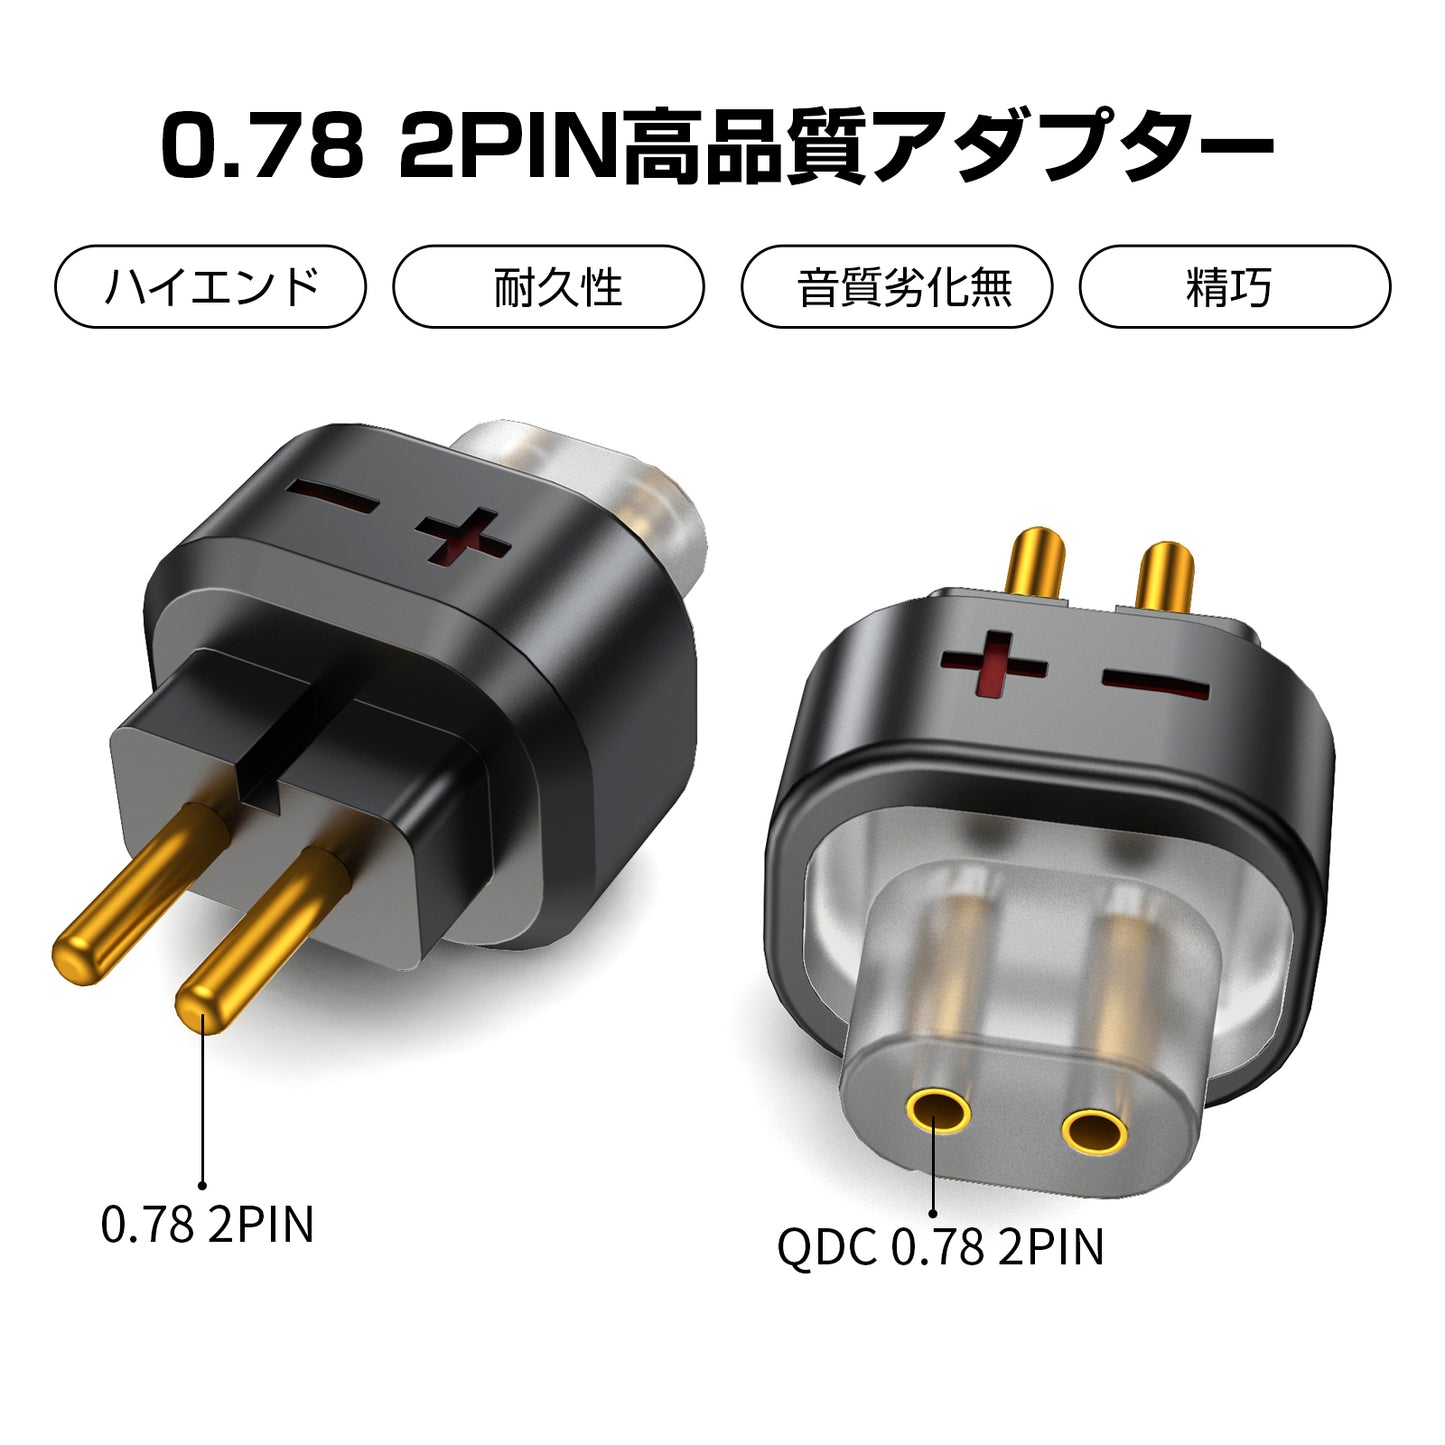 cooyin QDC 0.78 2pin(リケーブル側) to 0.78 2pin(イヤホン側) アダプター コネクター スライダー 金メッキプラグ 統合成形技術 音質劣化なし簡潔 精緻 線材テスト作業用 ミニタイプ